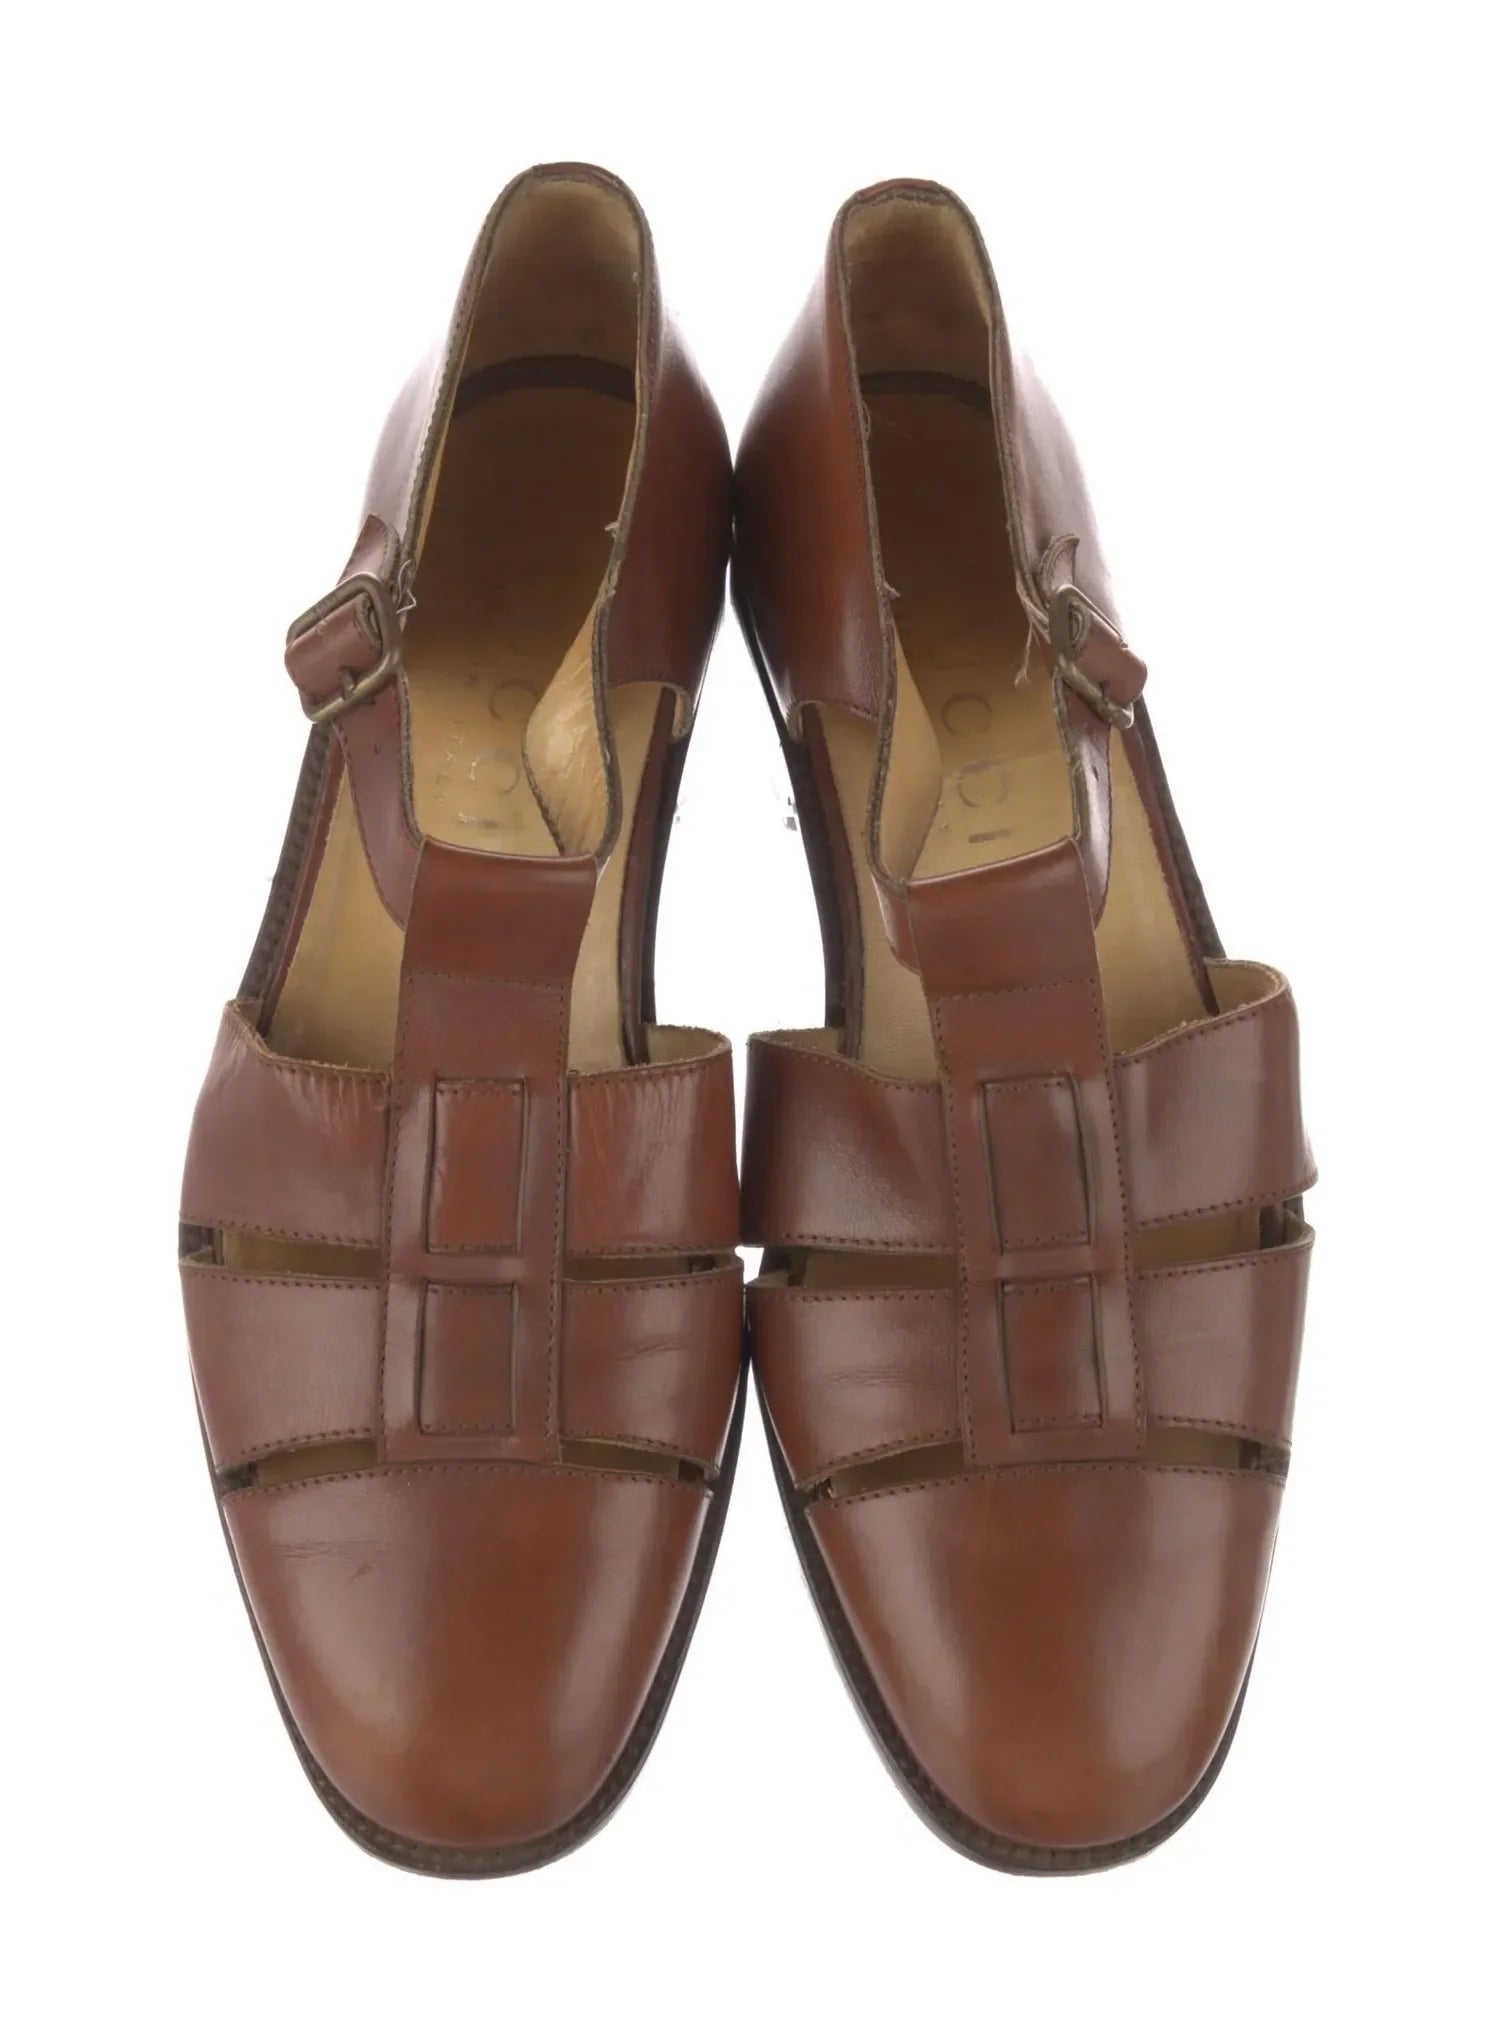 Vintage Leather Sandals
Size: 9.5 | UK 9